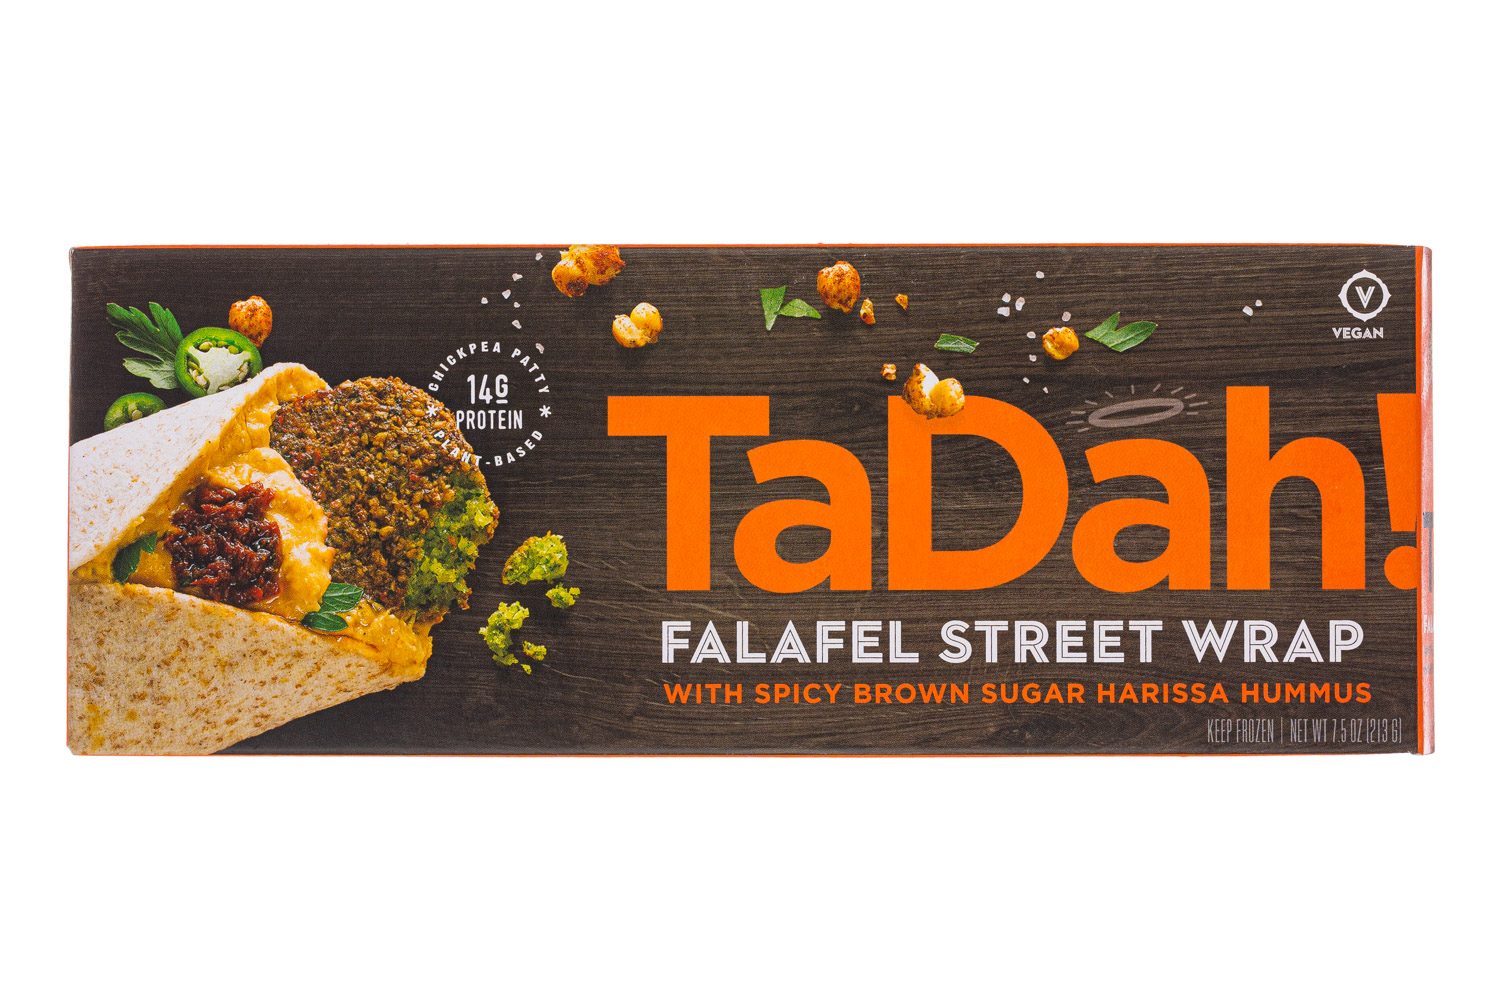 Falafel Street Wrap with Spicy Brown Sugar Harissa Hummus